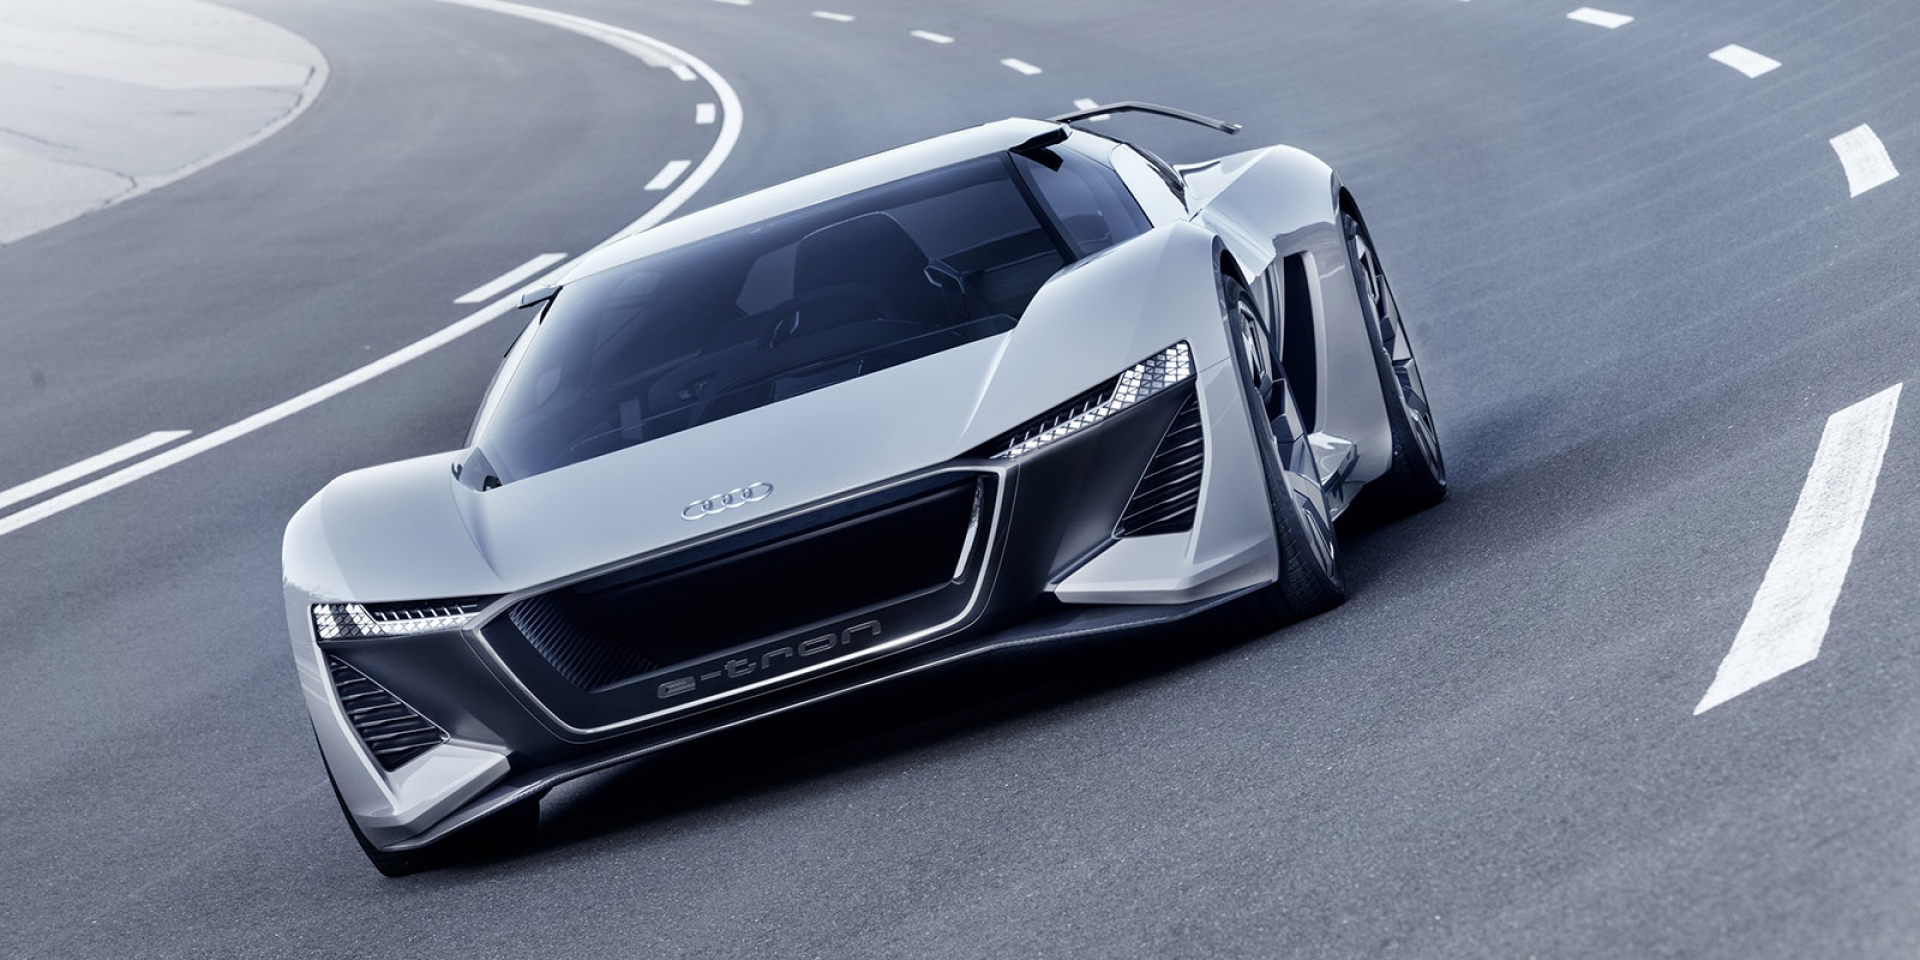 官方新聞稿。Audi PB 18 e-tron 純電概念超跑 顛覆未來純電競速想像 2018美國圓石灘車展全球正式發表